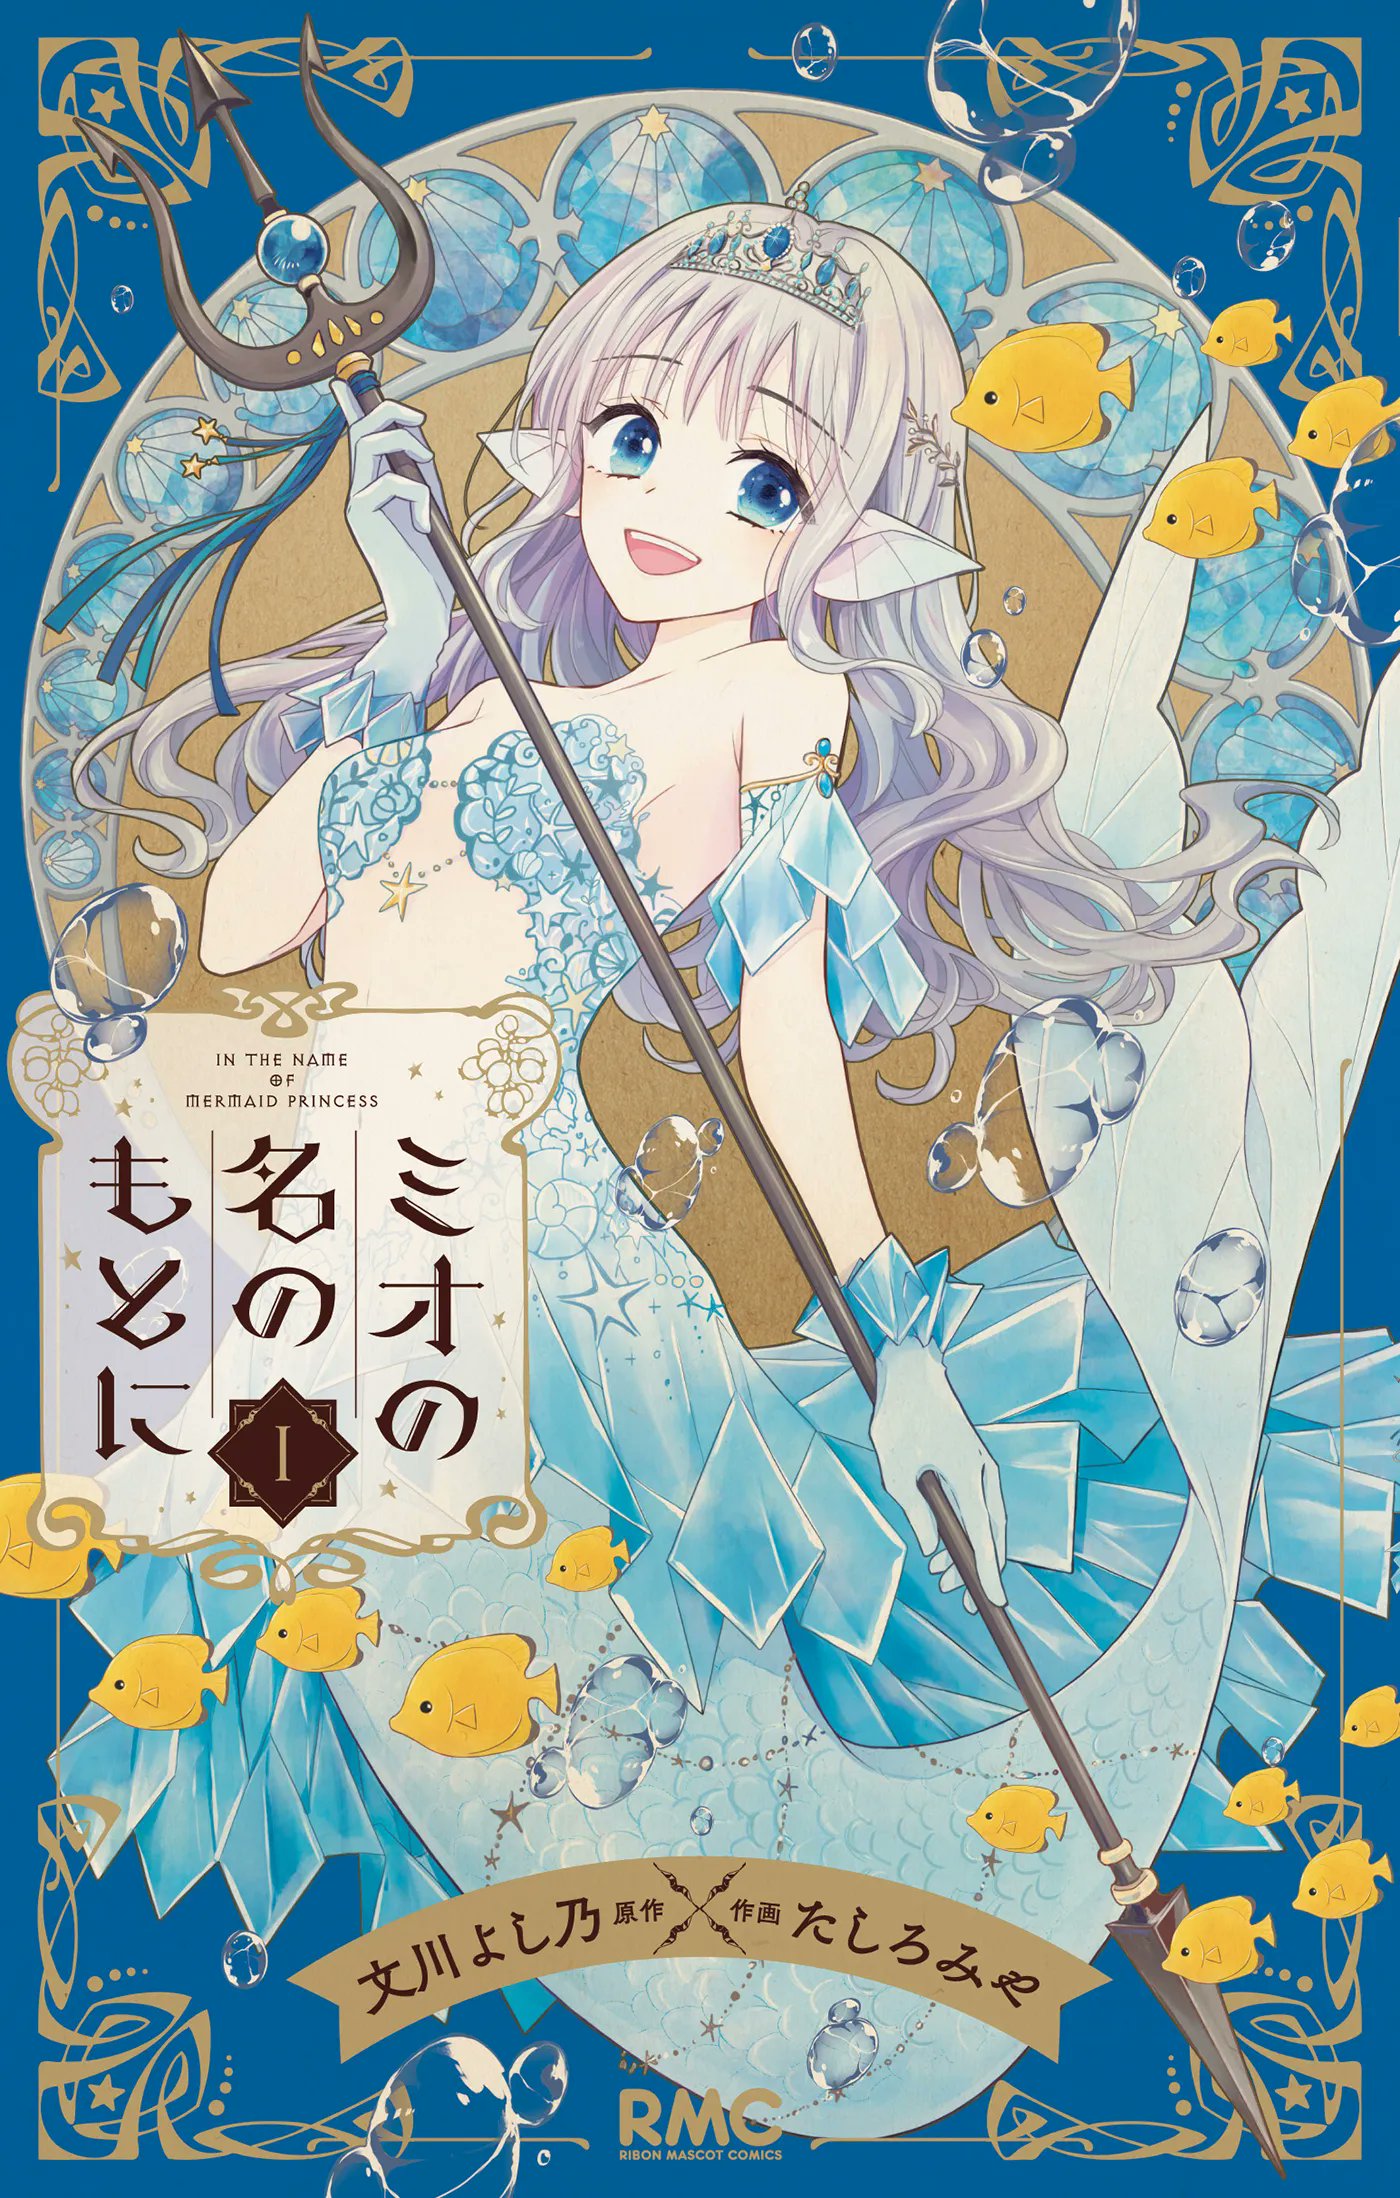 In the Name of the Mermaid Princess by Yoshino Fumikawa (Story) & Miya Tashiro (Art)